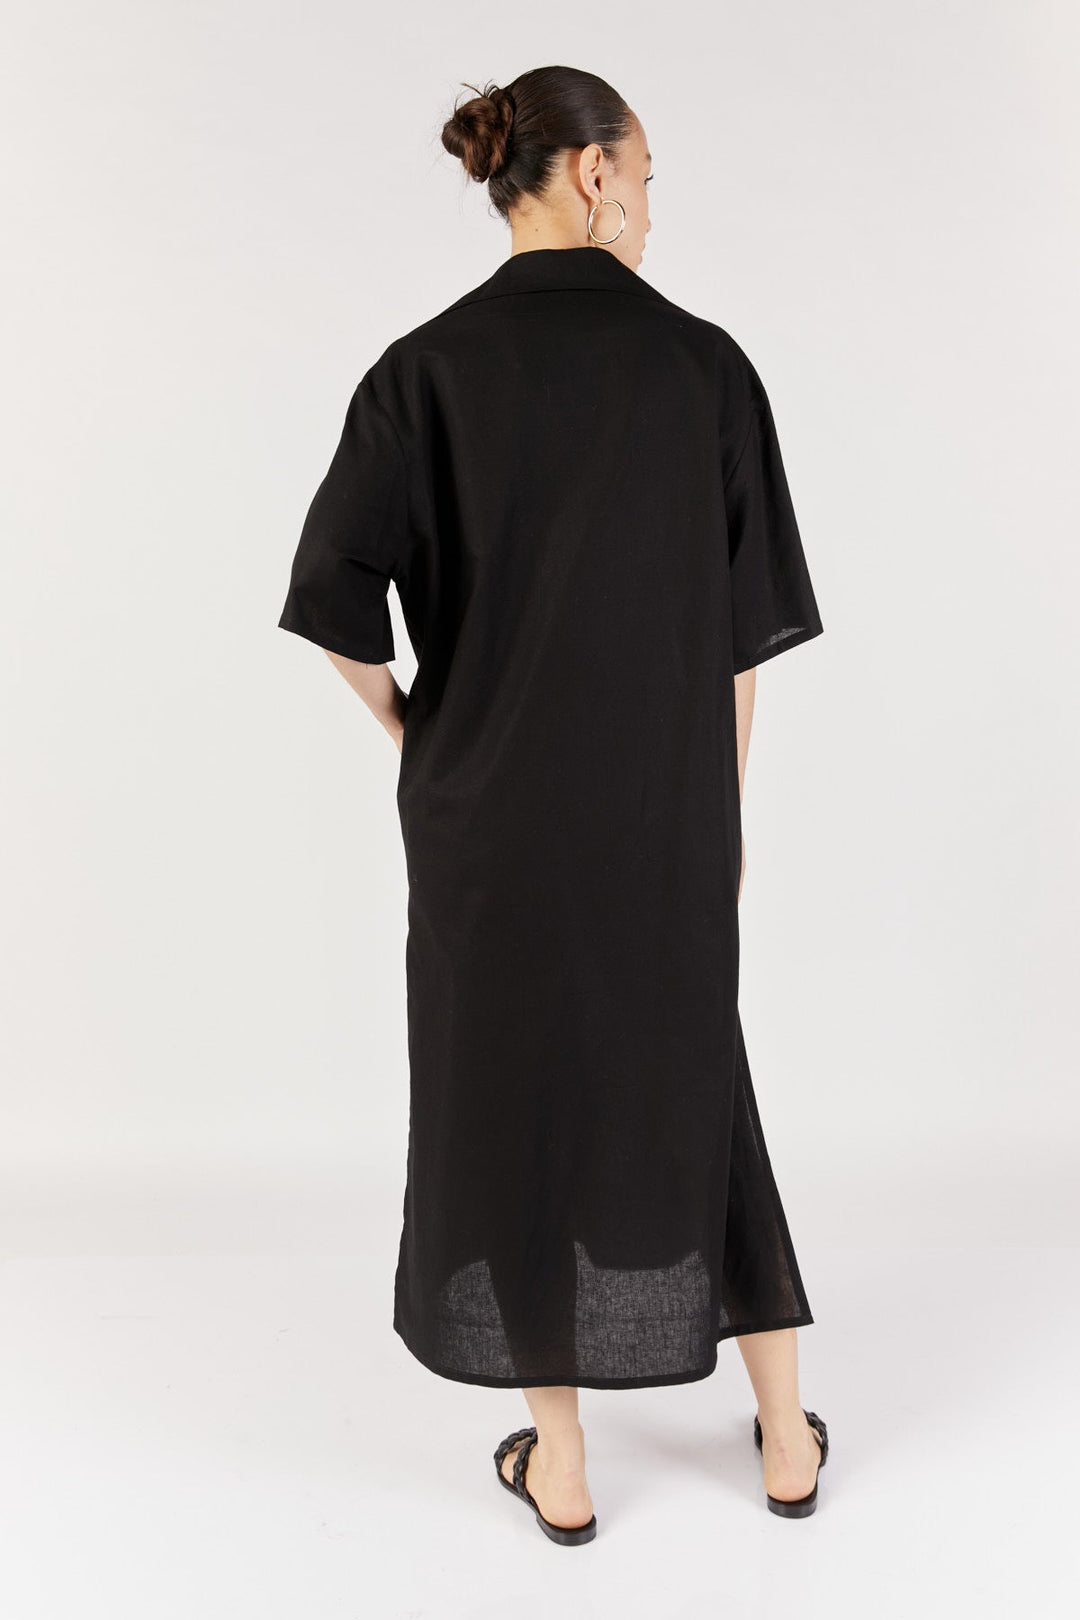 שמלת מידי יוקו בצבע שחור - Noritamy